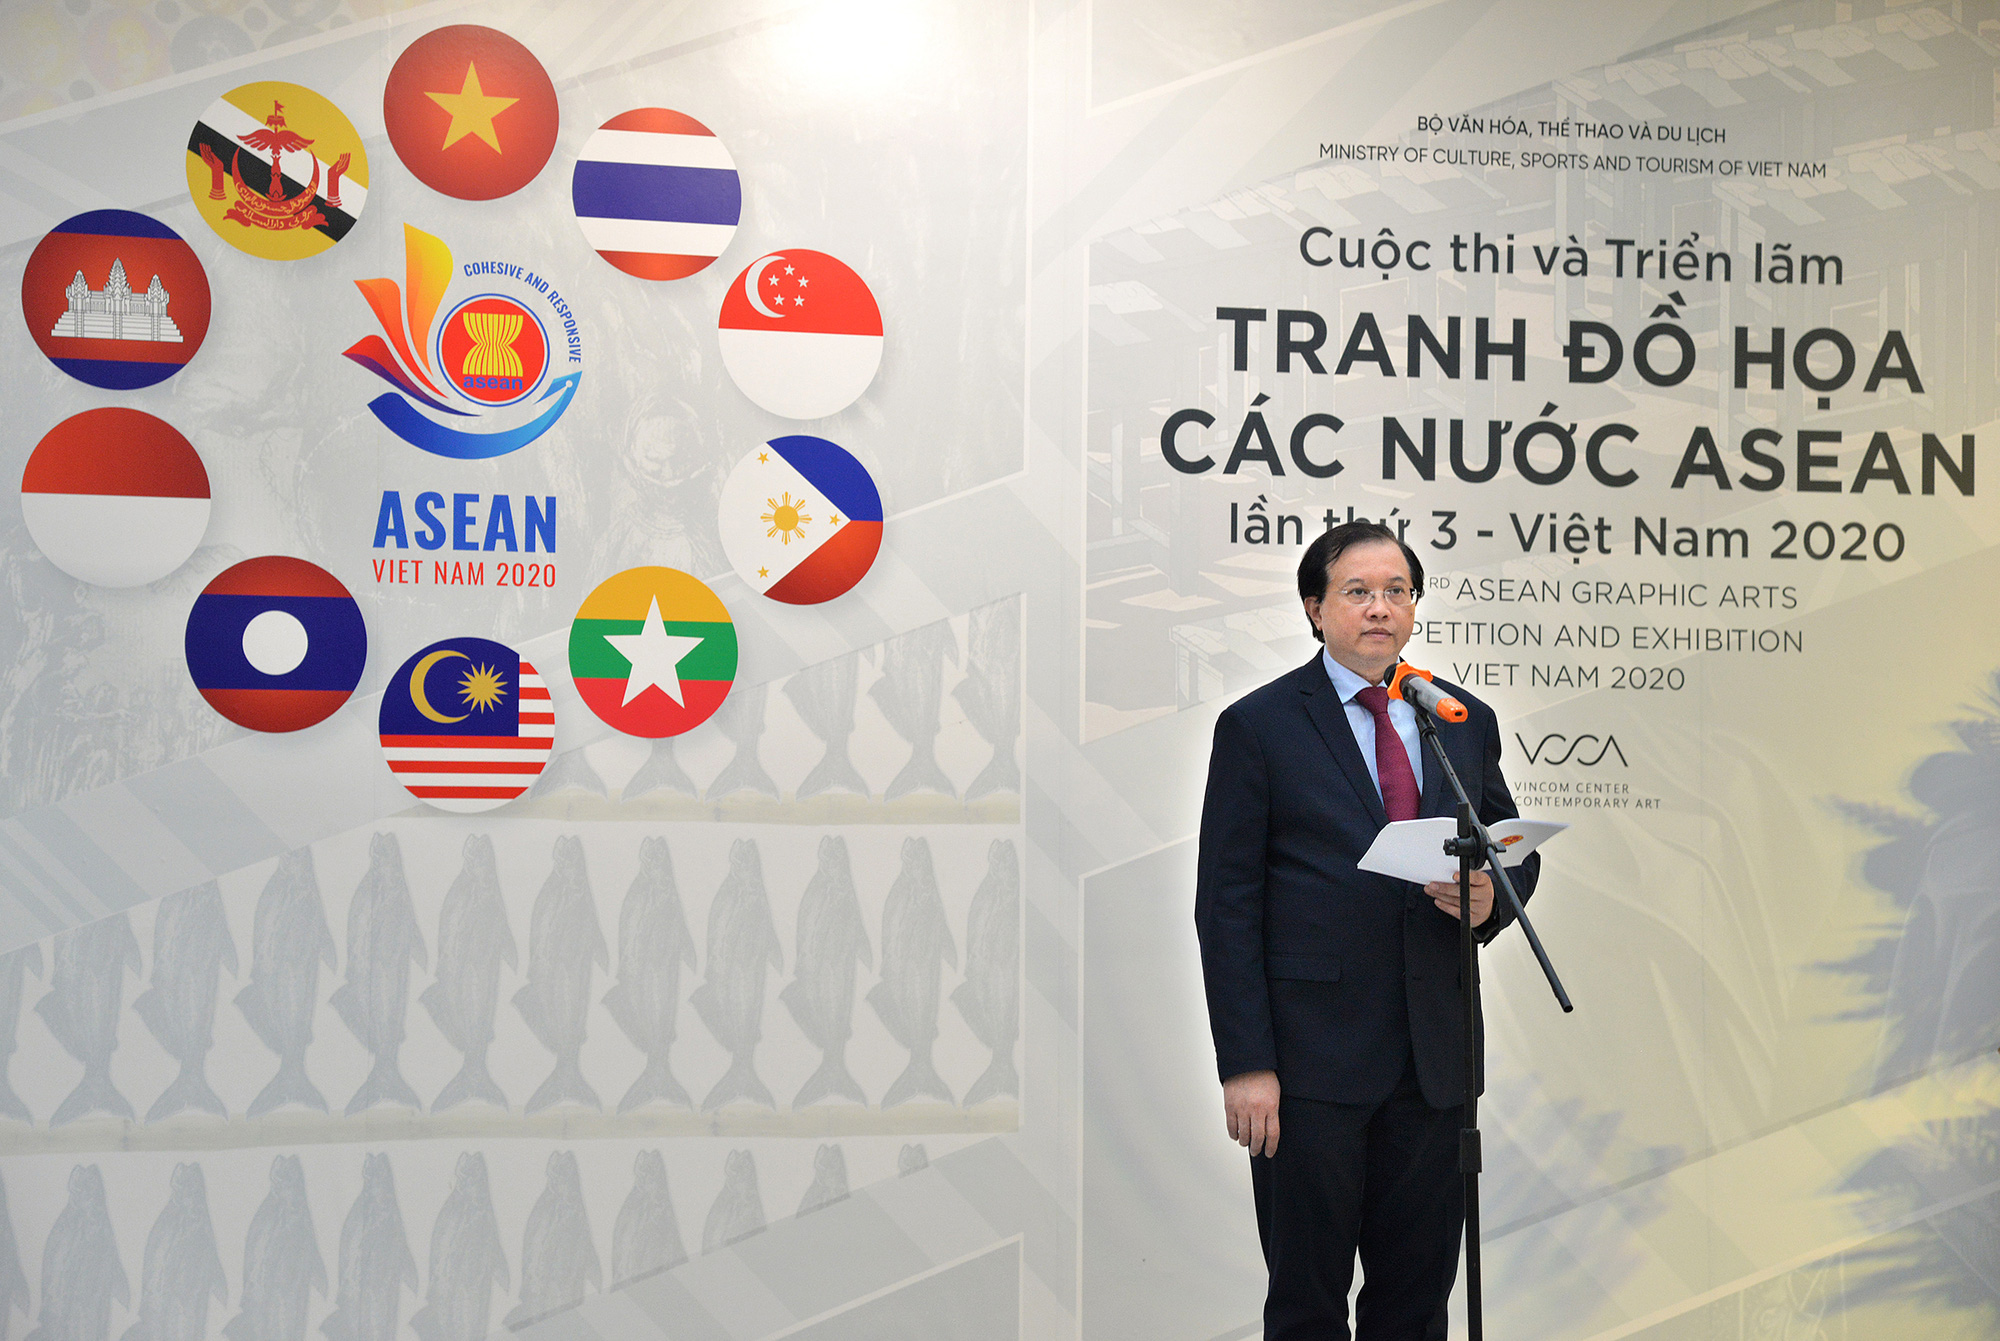 Khai mạc Cuộc thi và Triển lãm Tranh Đồ họa các nước ASEAN 2020 - Ảnh 2.